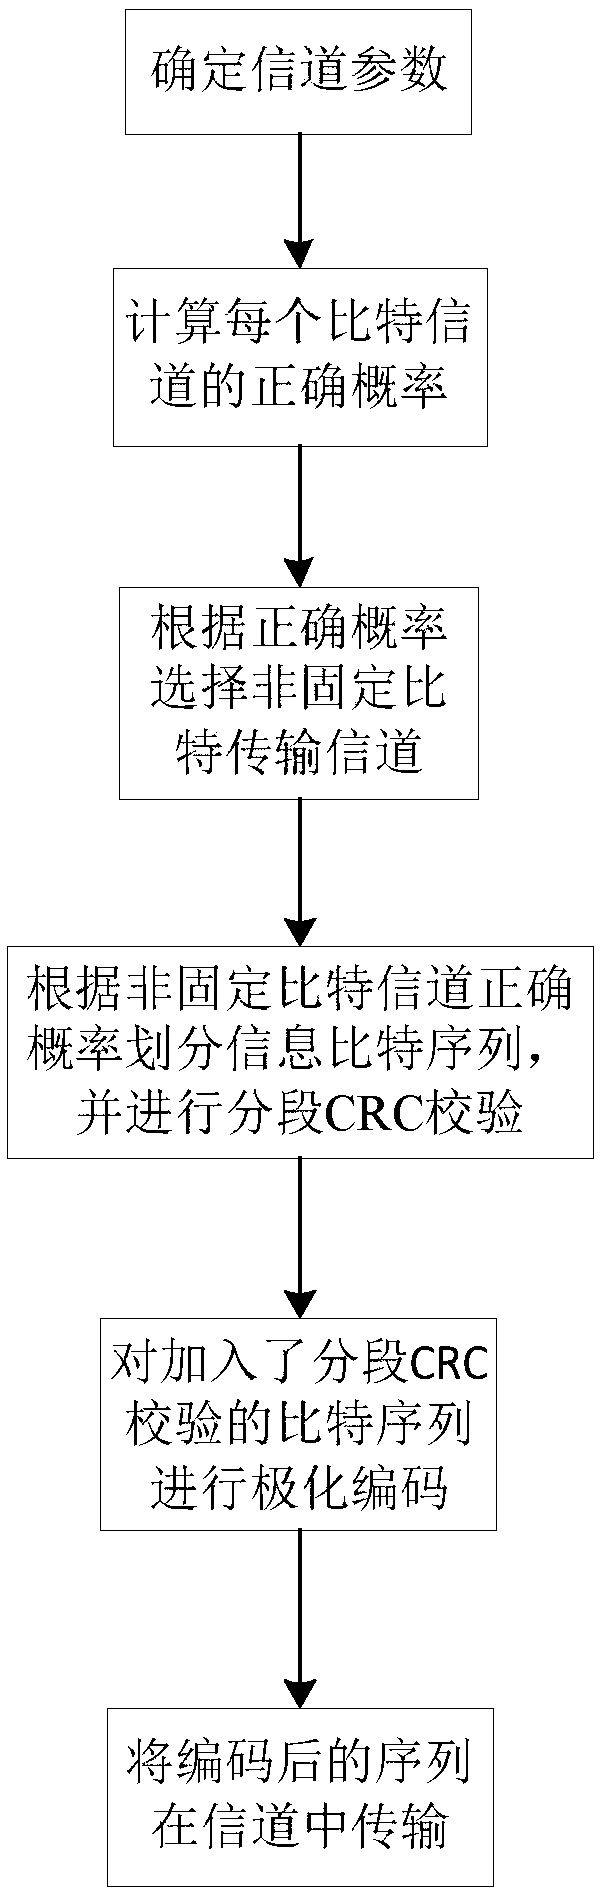 Segmented Cyclic Redundancy Check Method for Polar Codes